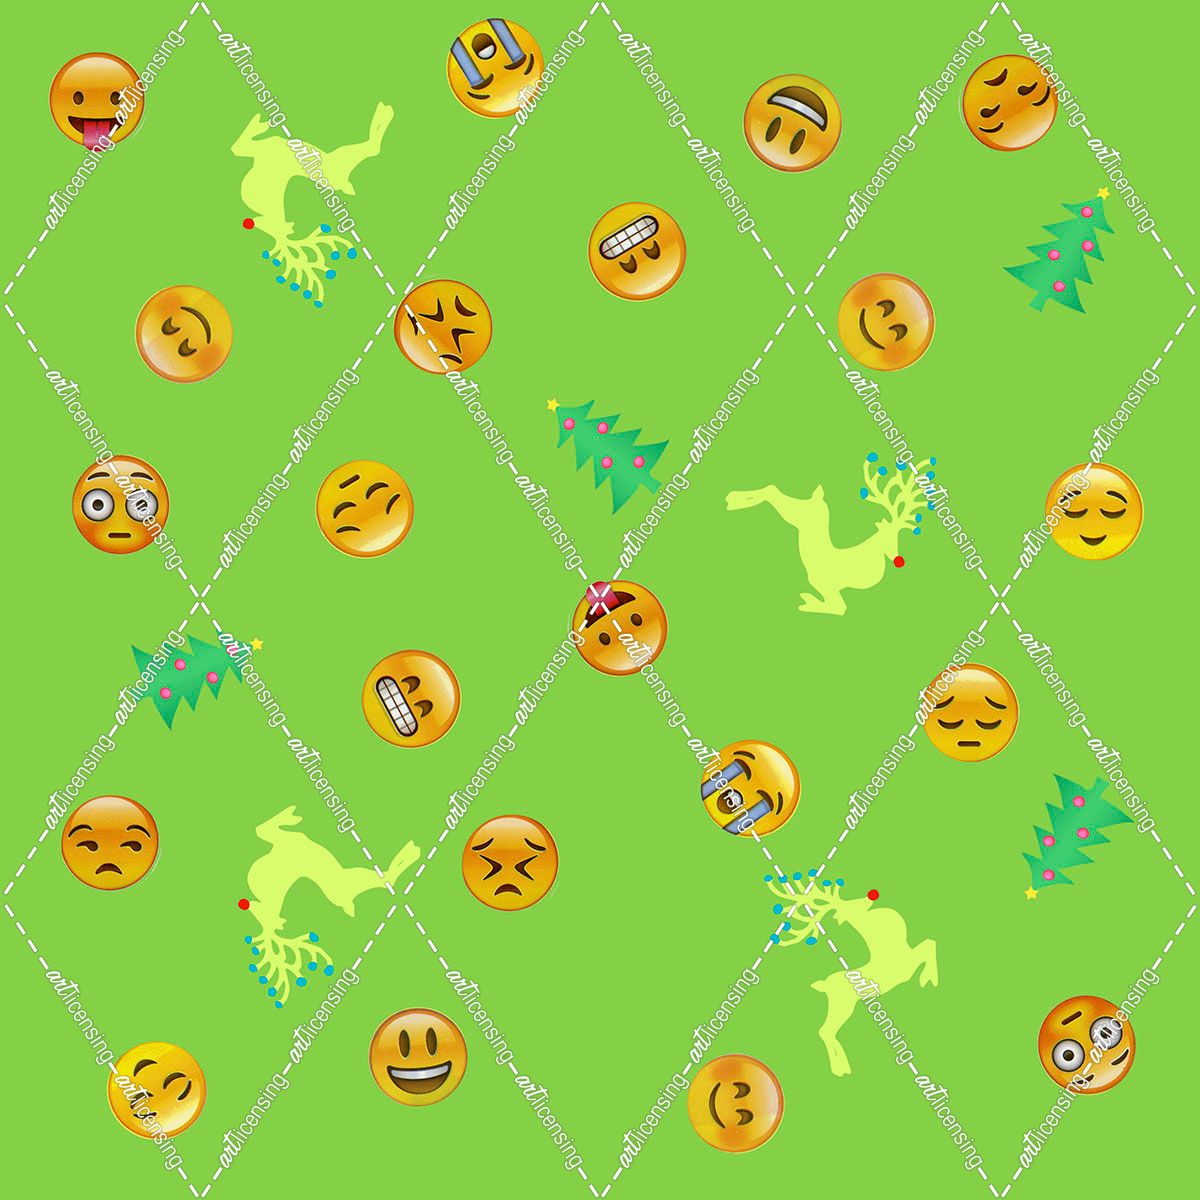 All Emoji Scramble II